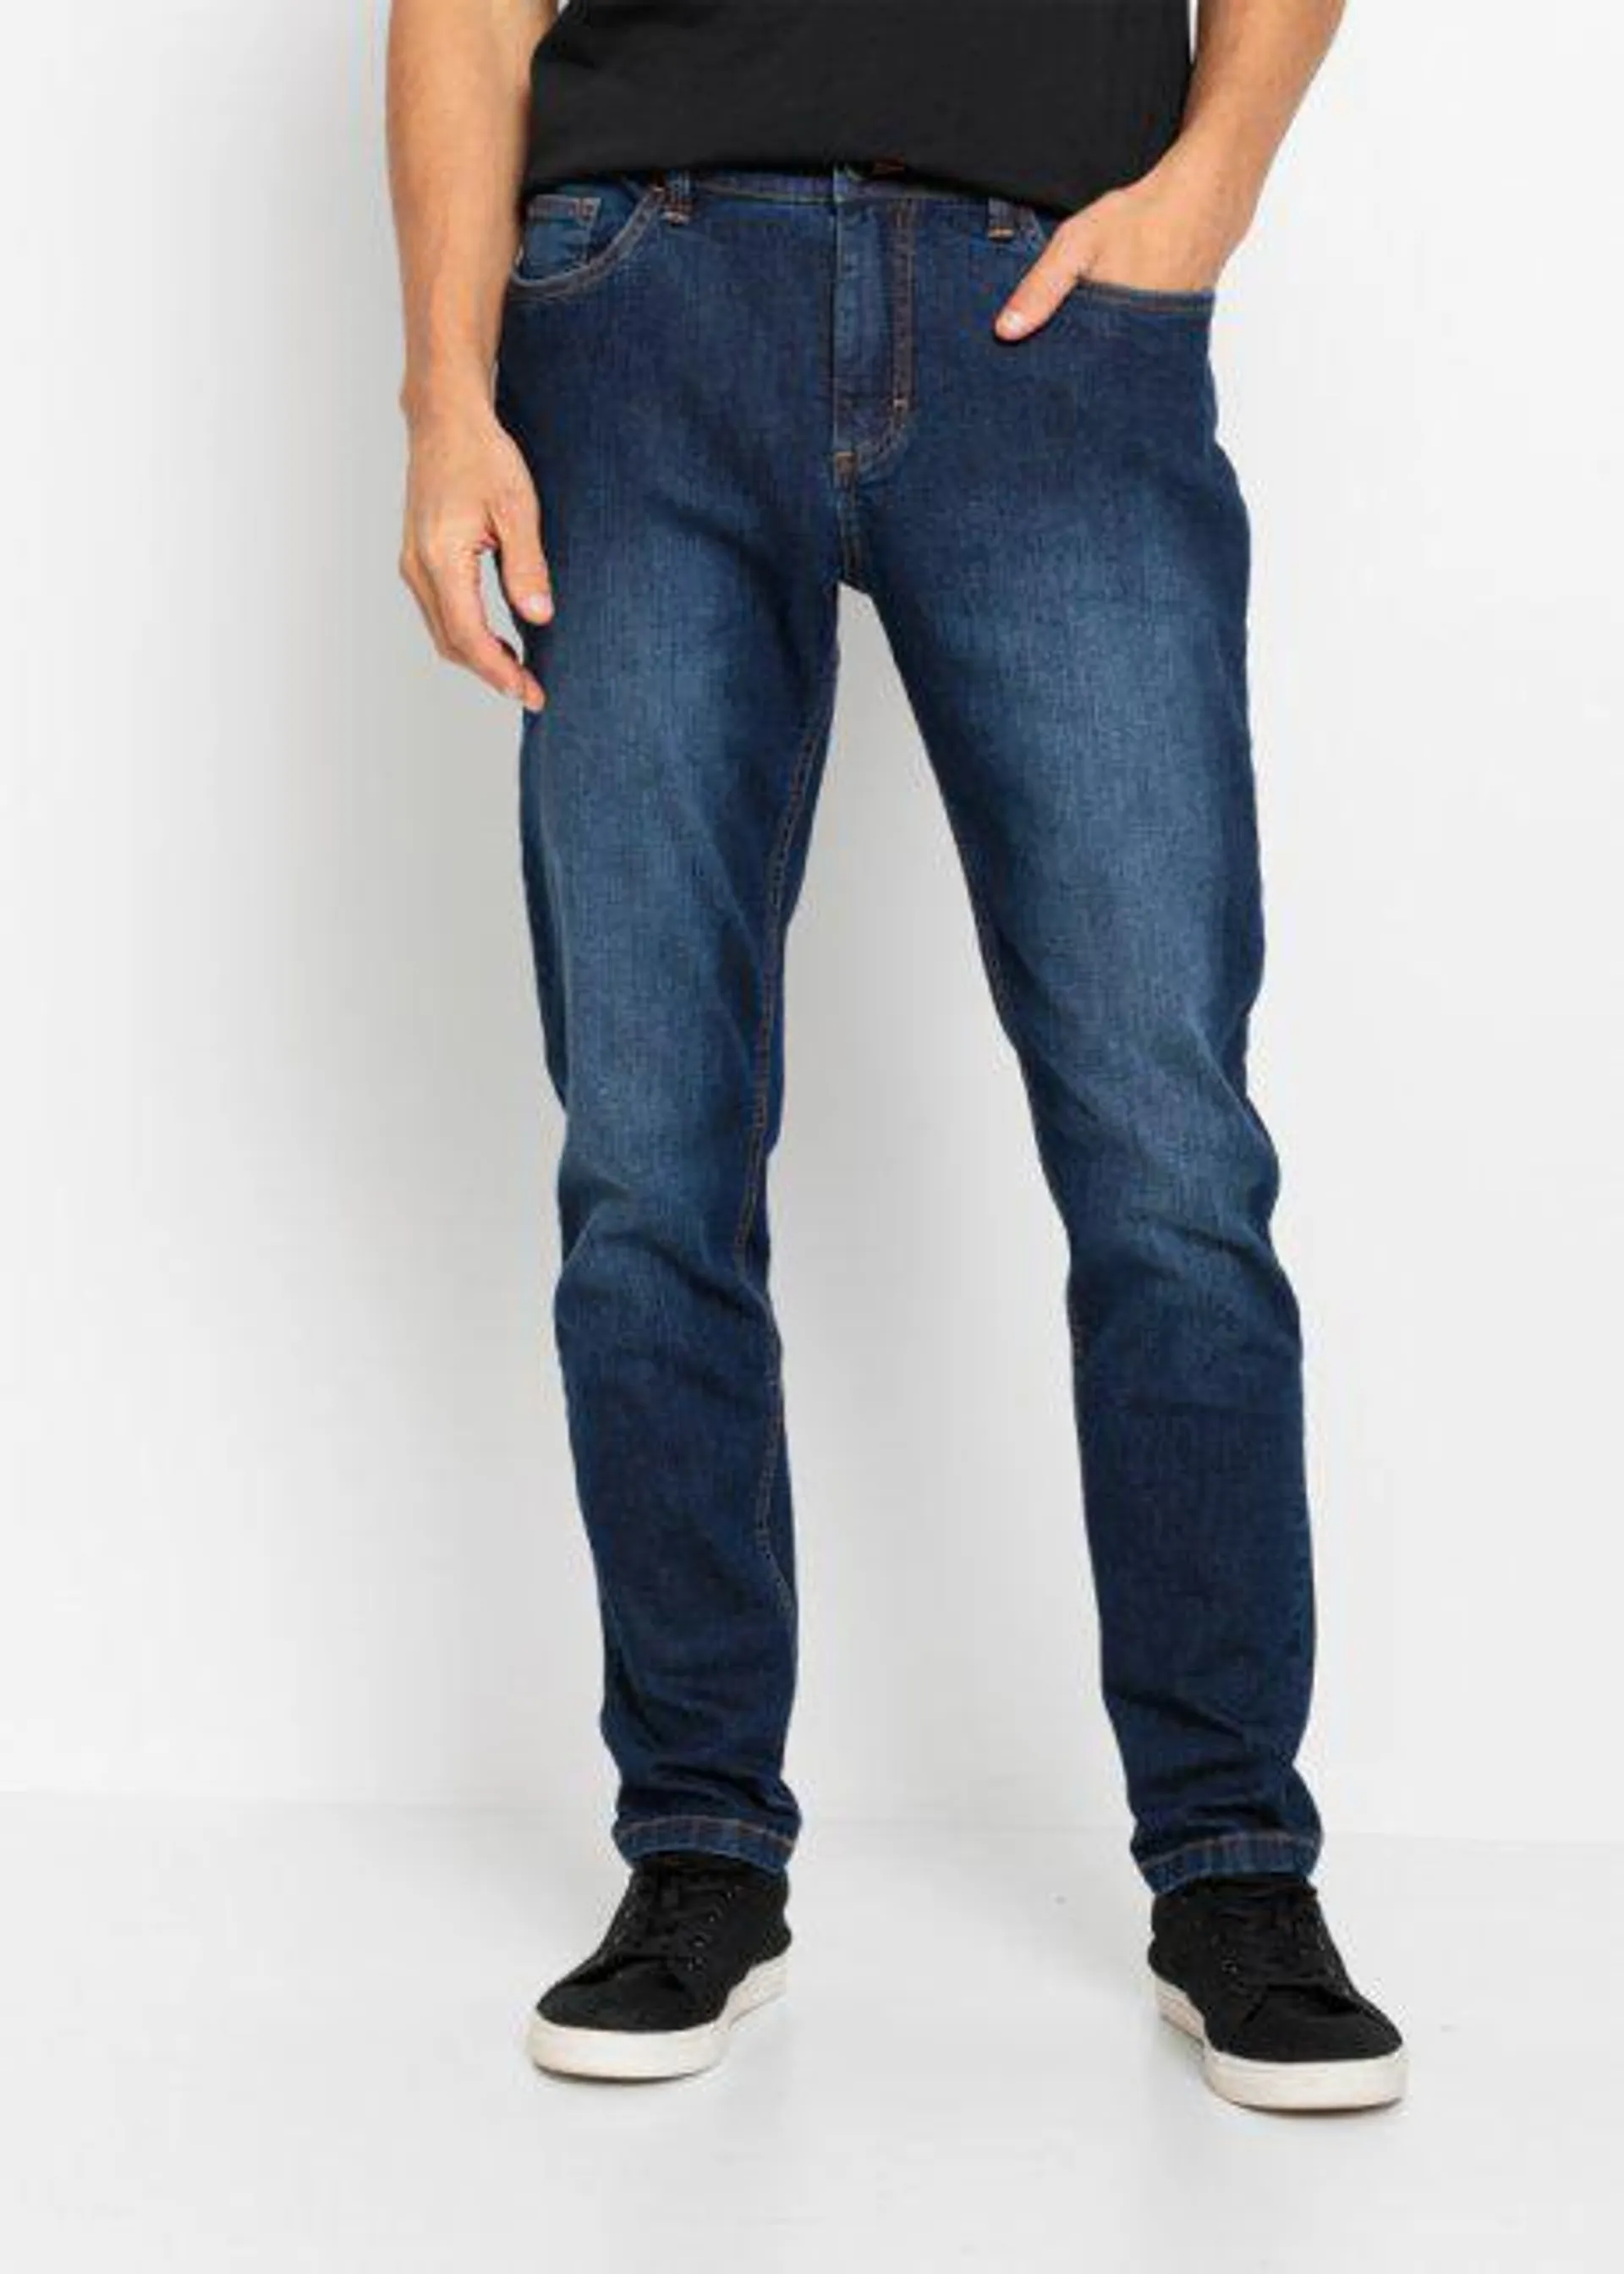 Jeans elasticizzati classic fit con con Positive Denim #1 Fabric